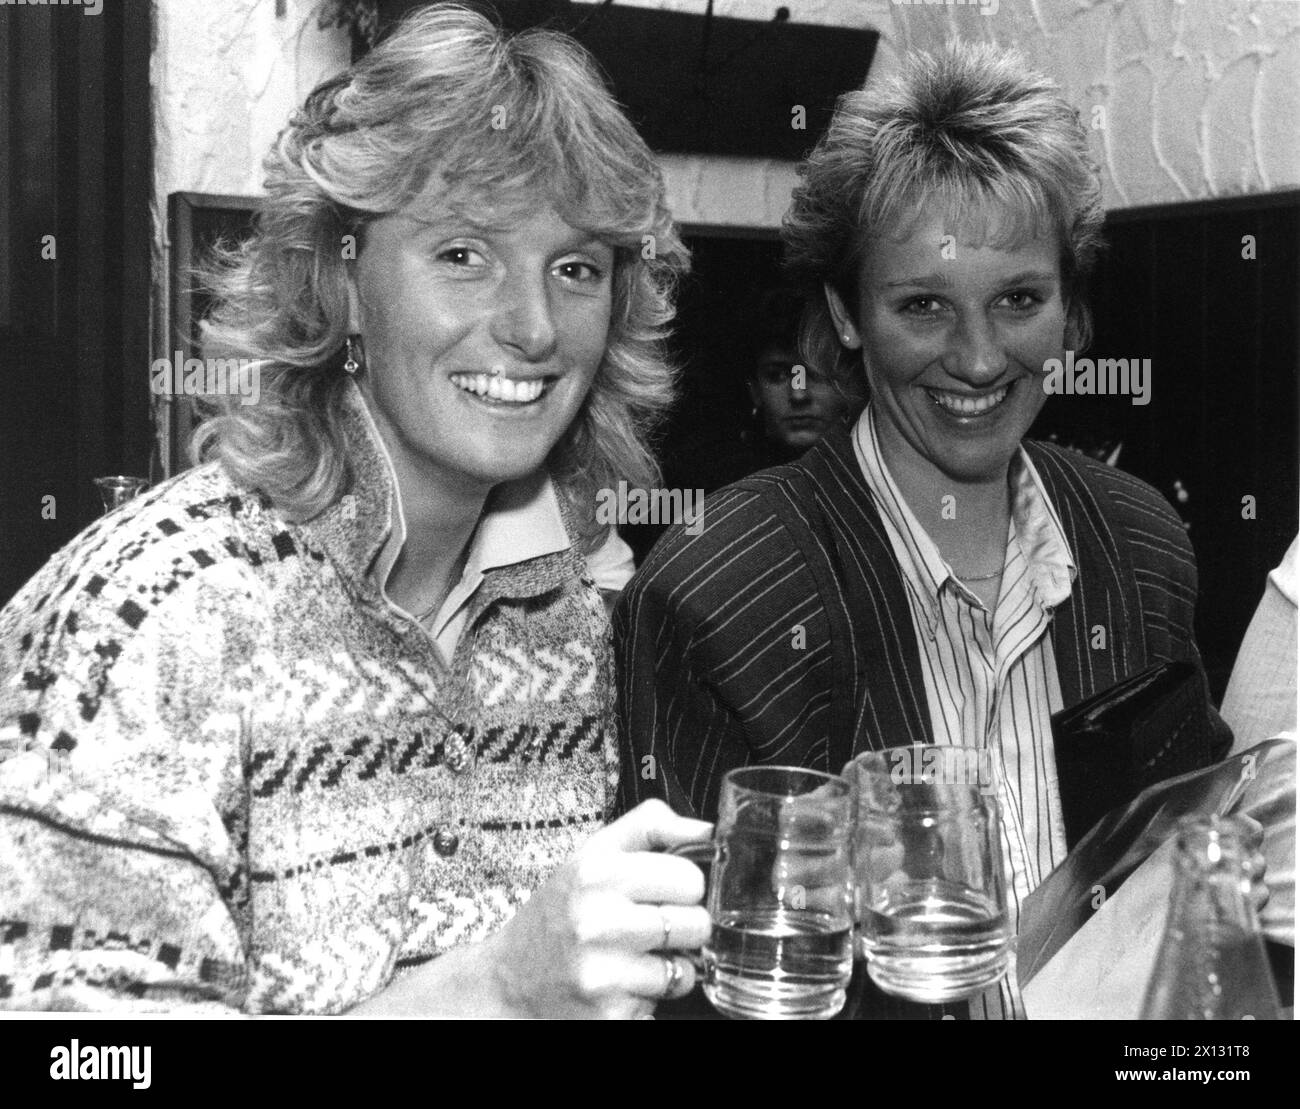 Das Foto wurde am 9. Oktober 1987 aufgenommen und zeigt die österreichische Skifahrerin Sylvia Eder (l.), die mit ihrer deutschen Kollegin Michaela Gerg bei einem geselligen Treffen in Wien eine Brille klickt. - 19871009_PD0012 - Rechteinfo: Rechte verwaltet (RM) Stockfoto